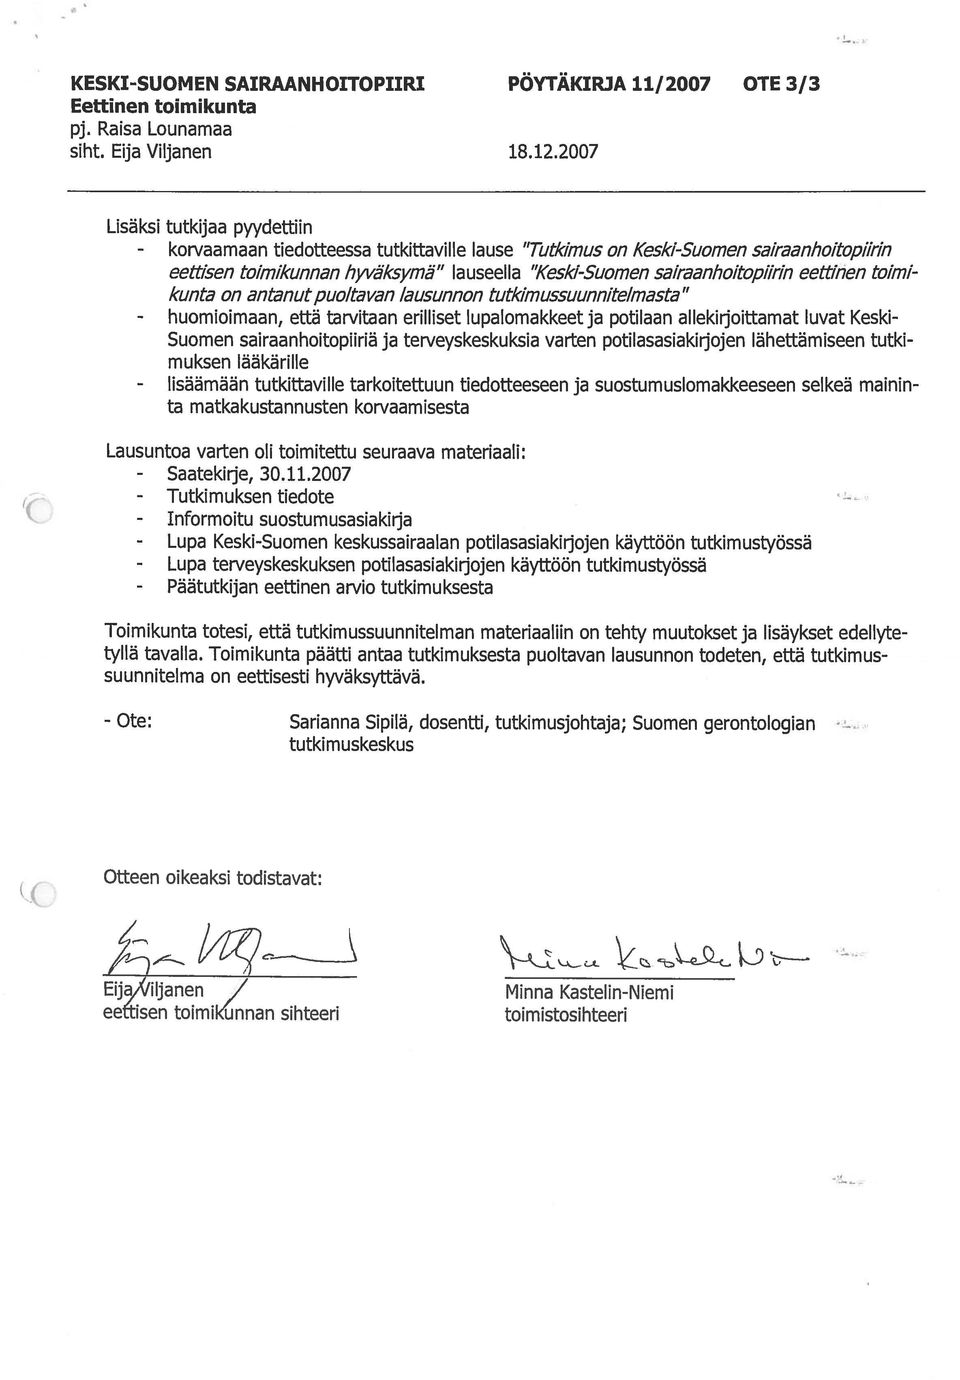 eettinen to/mi kunta on antanut puolta van lausunnon tutkimussuunnitelmasta - huomioimaan, että tarvitaan erilliset Iupalomakkeet ja potilaan allekirjoittamat luvat Keski Suomen sairaanhoitopflriä ja